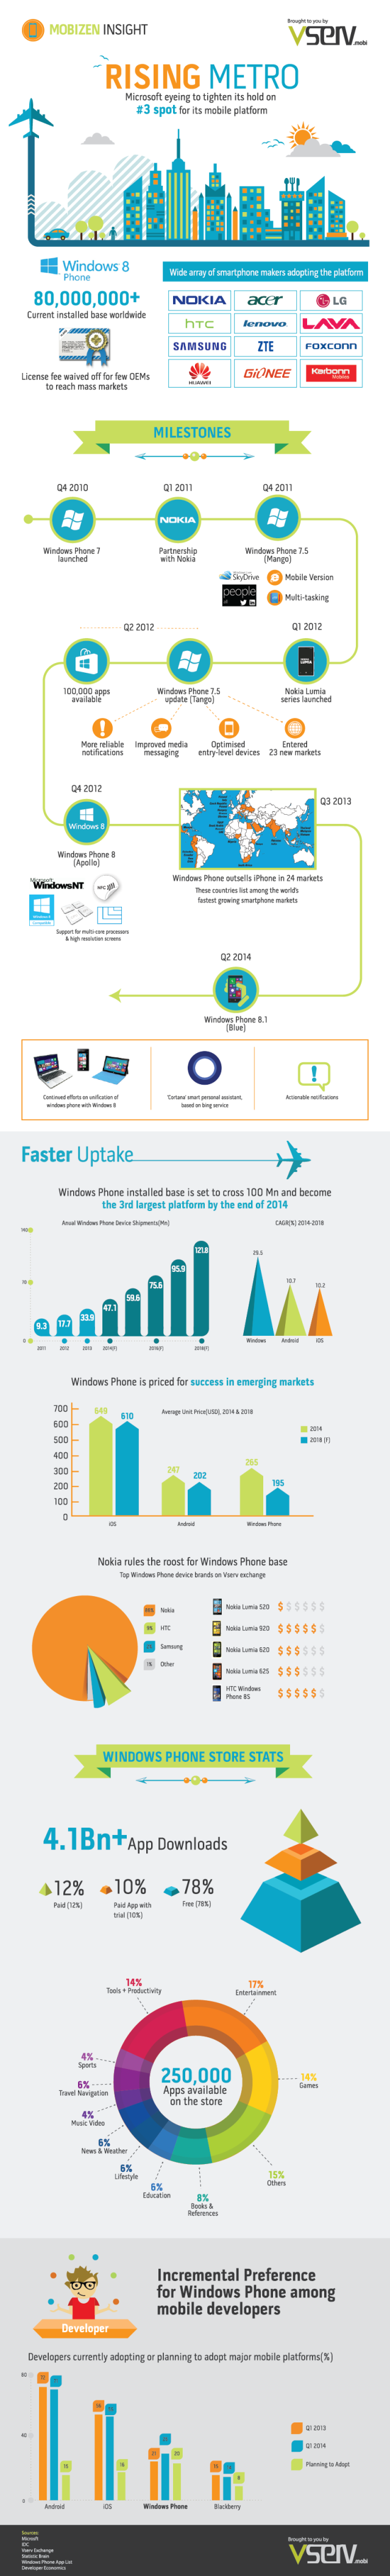 Vserv mobi - Rise of Windows Phone -  Infographic 640